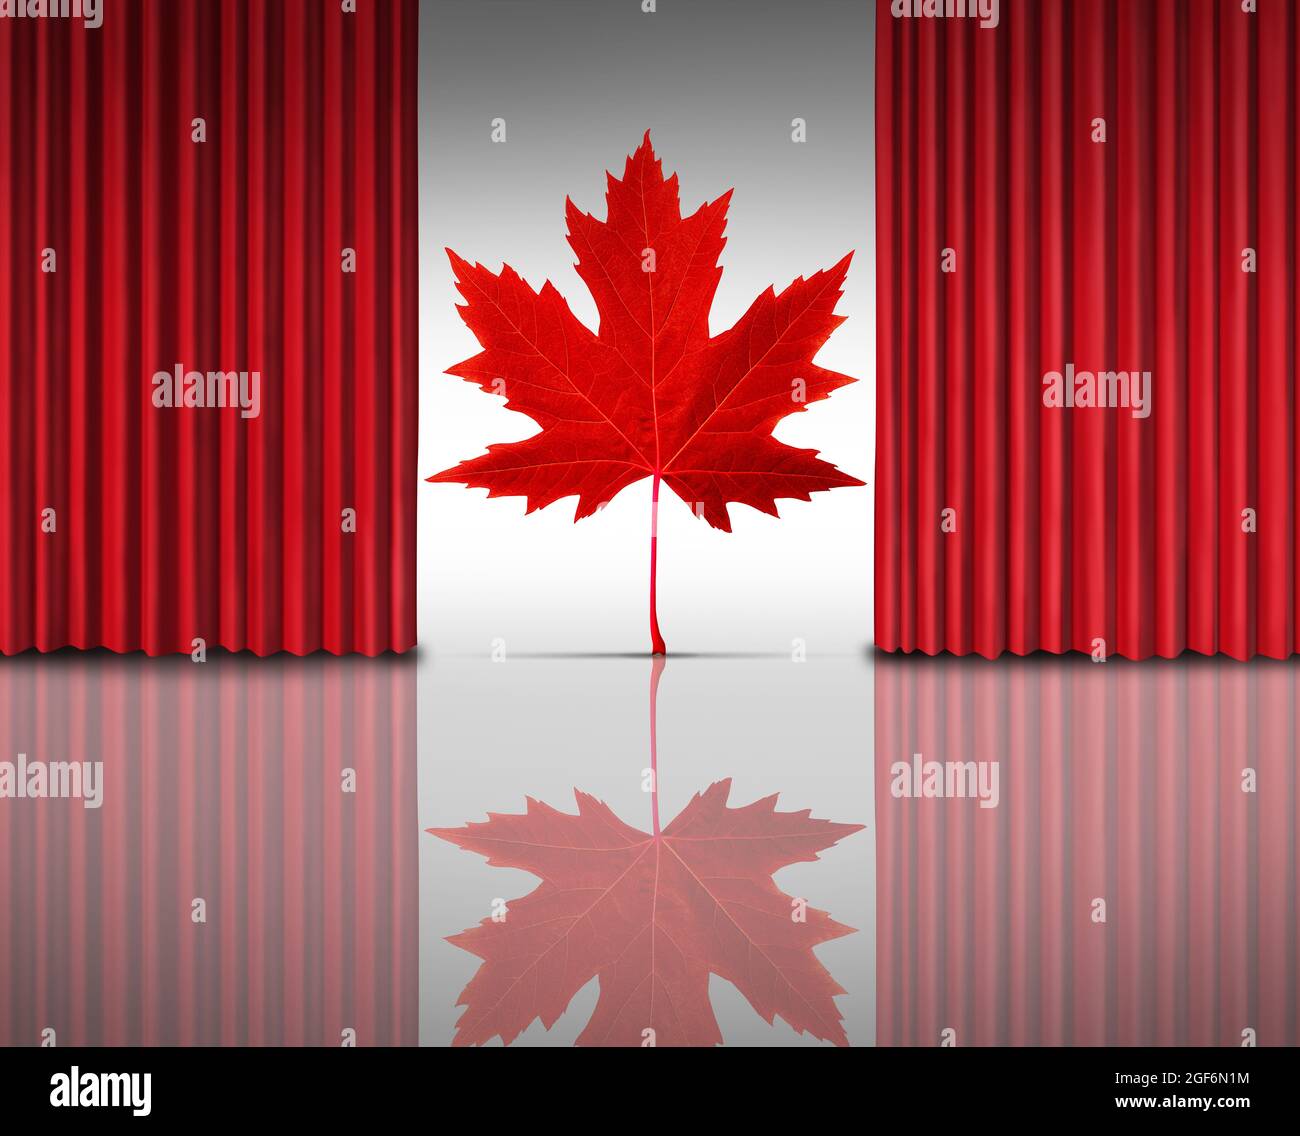 Le divertissement canadien pour les arts du cinéma au Canada avec des rideaux ou des rideaux de velours rouge ouverts révélant une feuille d'érable rouge. Banque D'Images